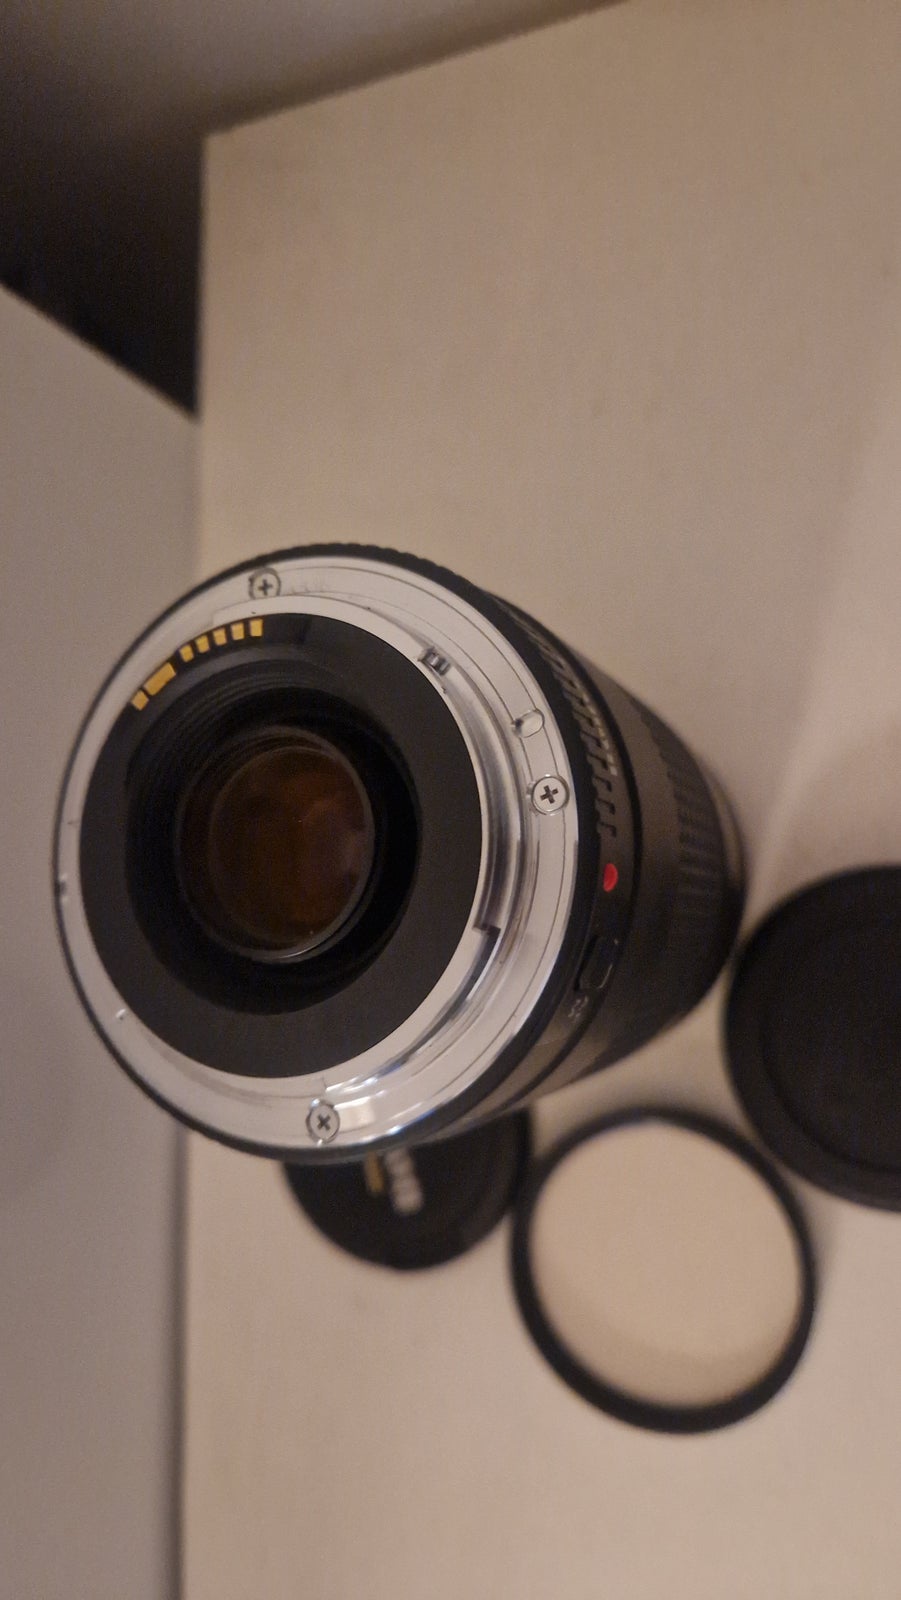 Zoomobjektiv, Canon, EF 75-300 1:4.5-5.6 II